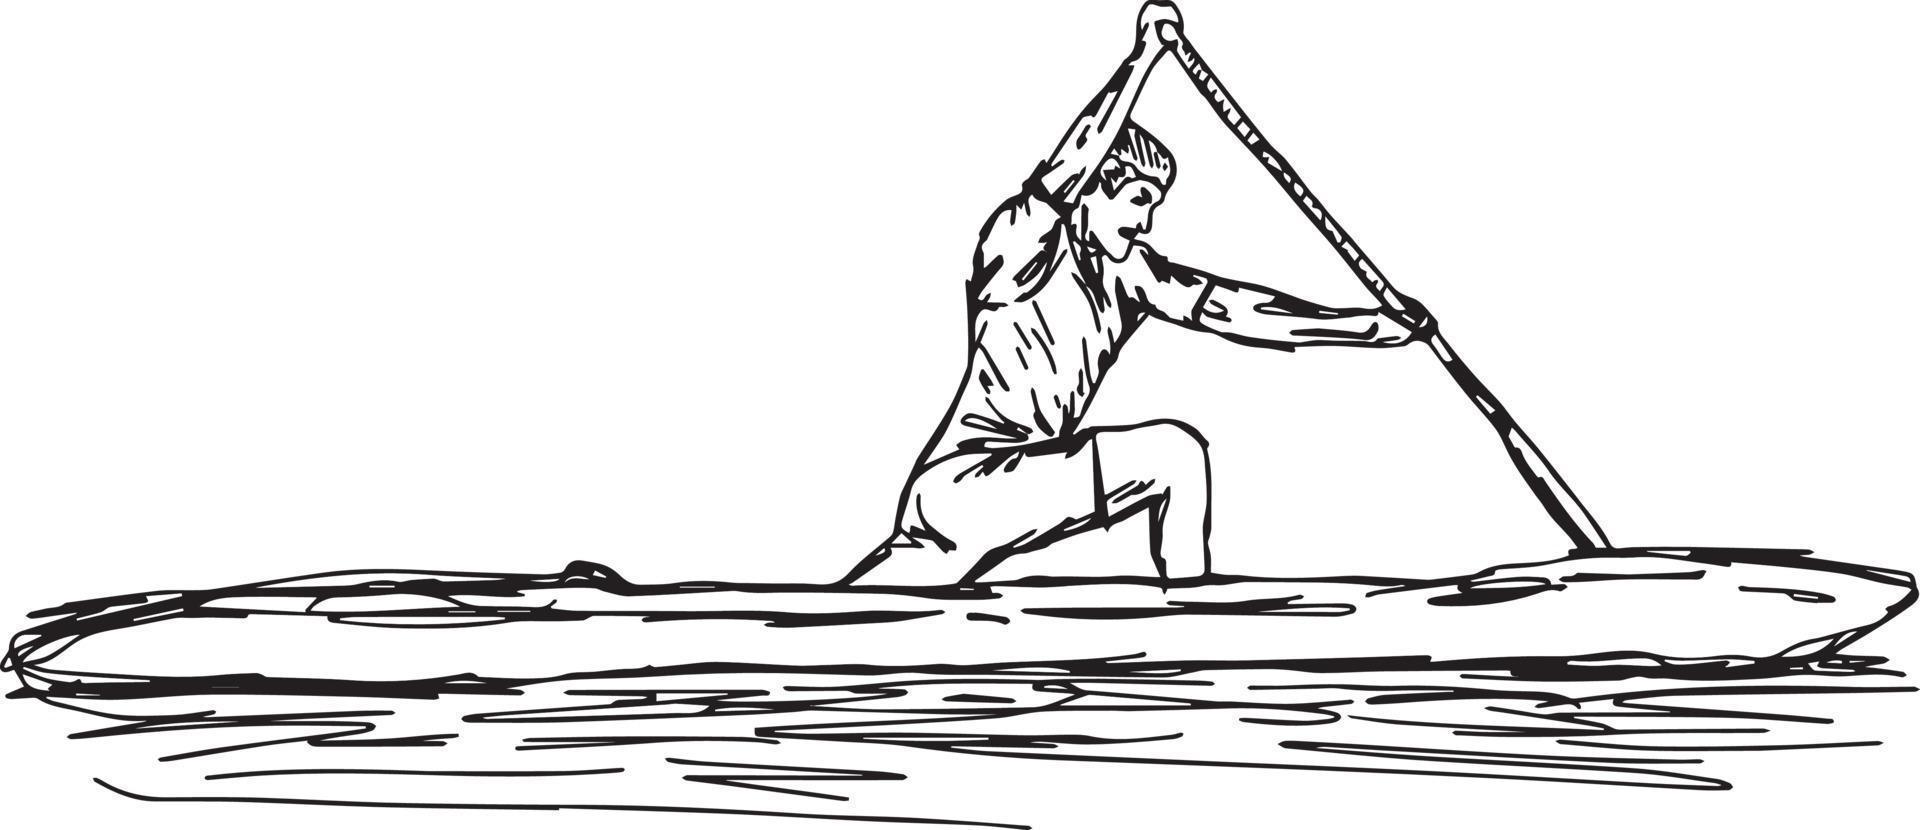 Joueur de slalom en canoë - illustration vectorielle vecteur